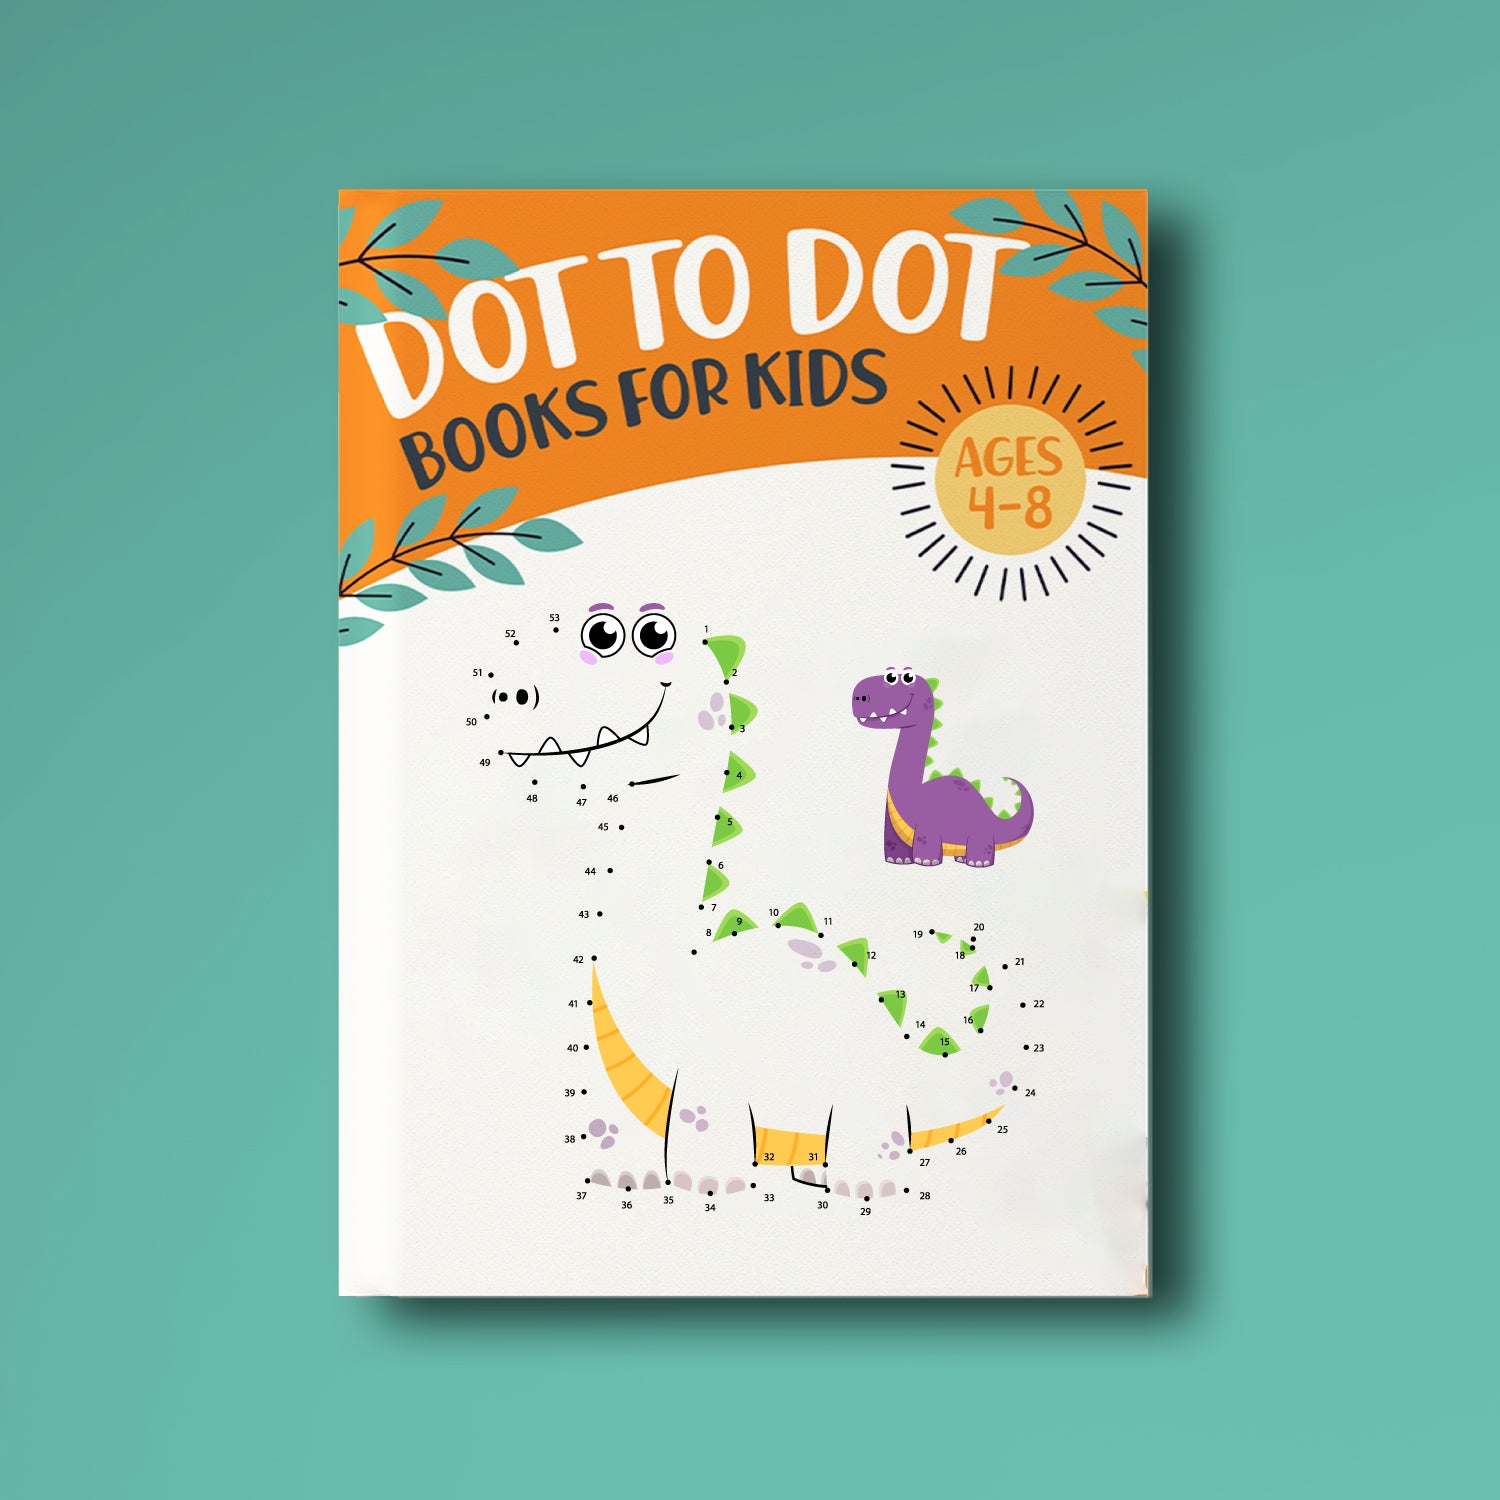 dinosaur dot to dot book cover for kids 4-8 